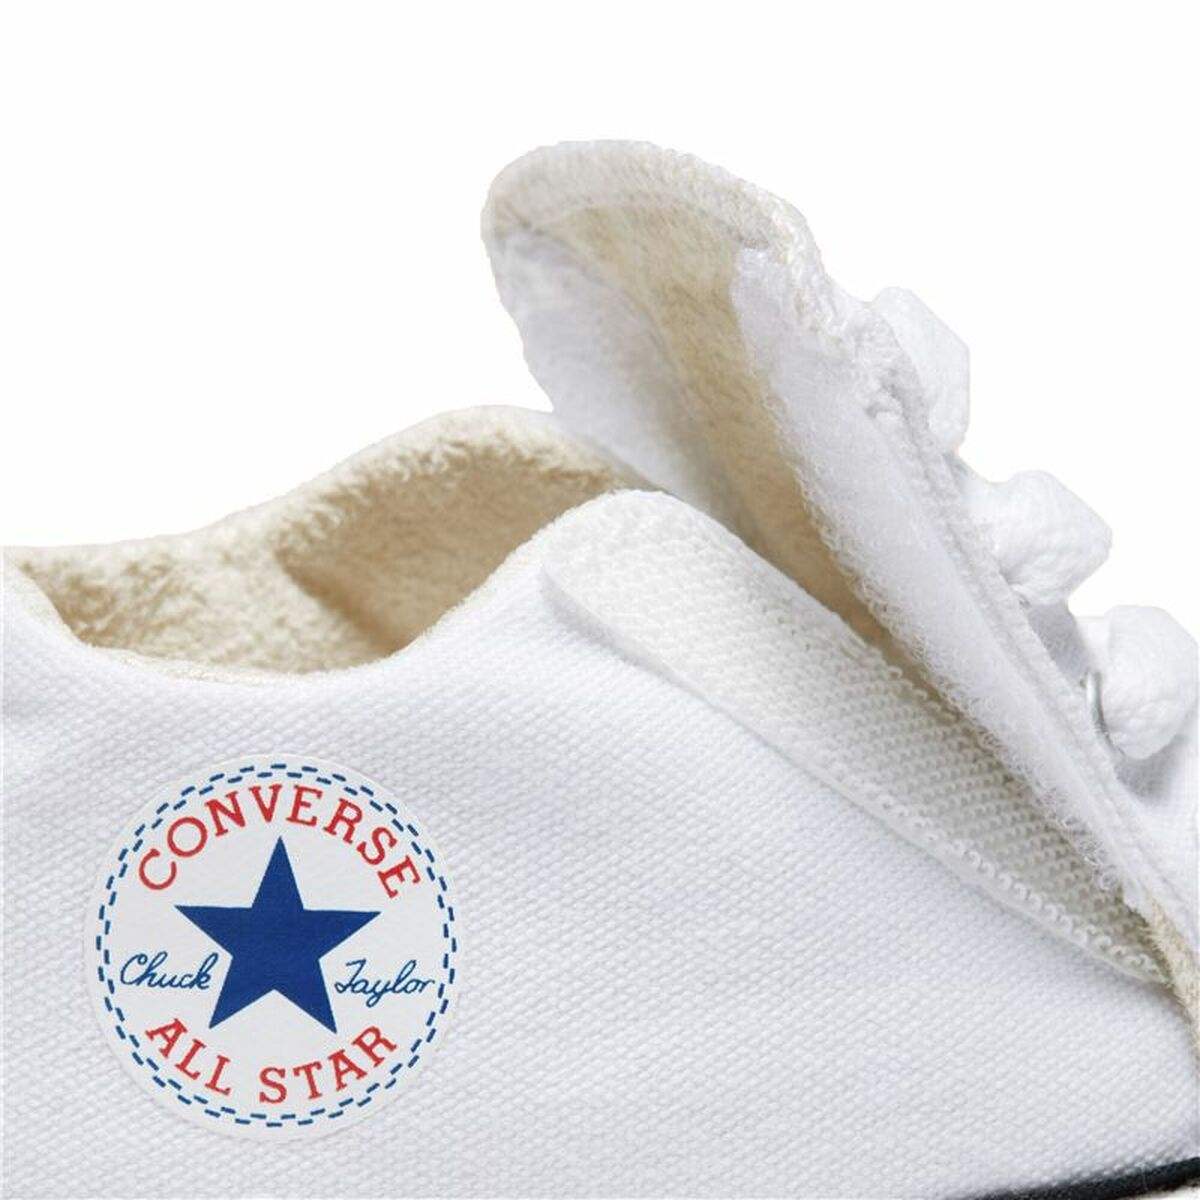 Chaussures de Sport pour Enfants Converse Chuck Taylor All Star Cribster Blanc - Converse - Jardin D'Eyden - jardindeyden.fr